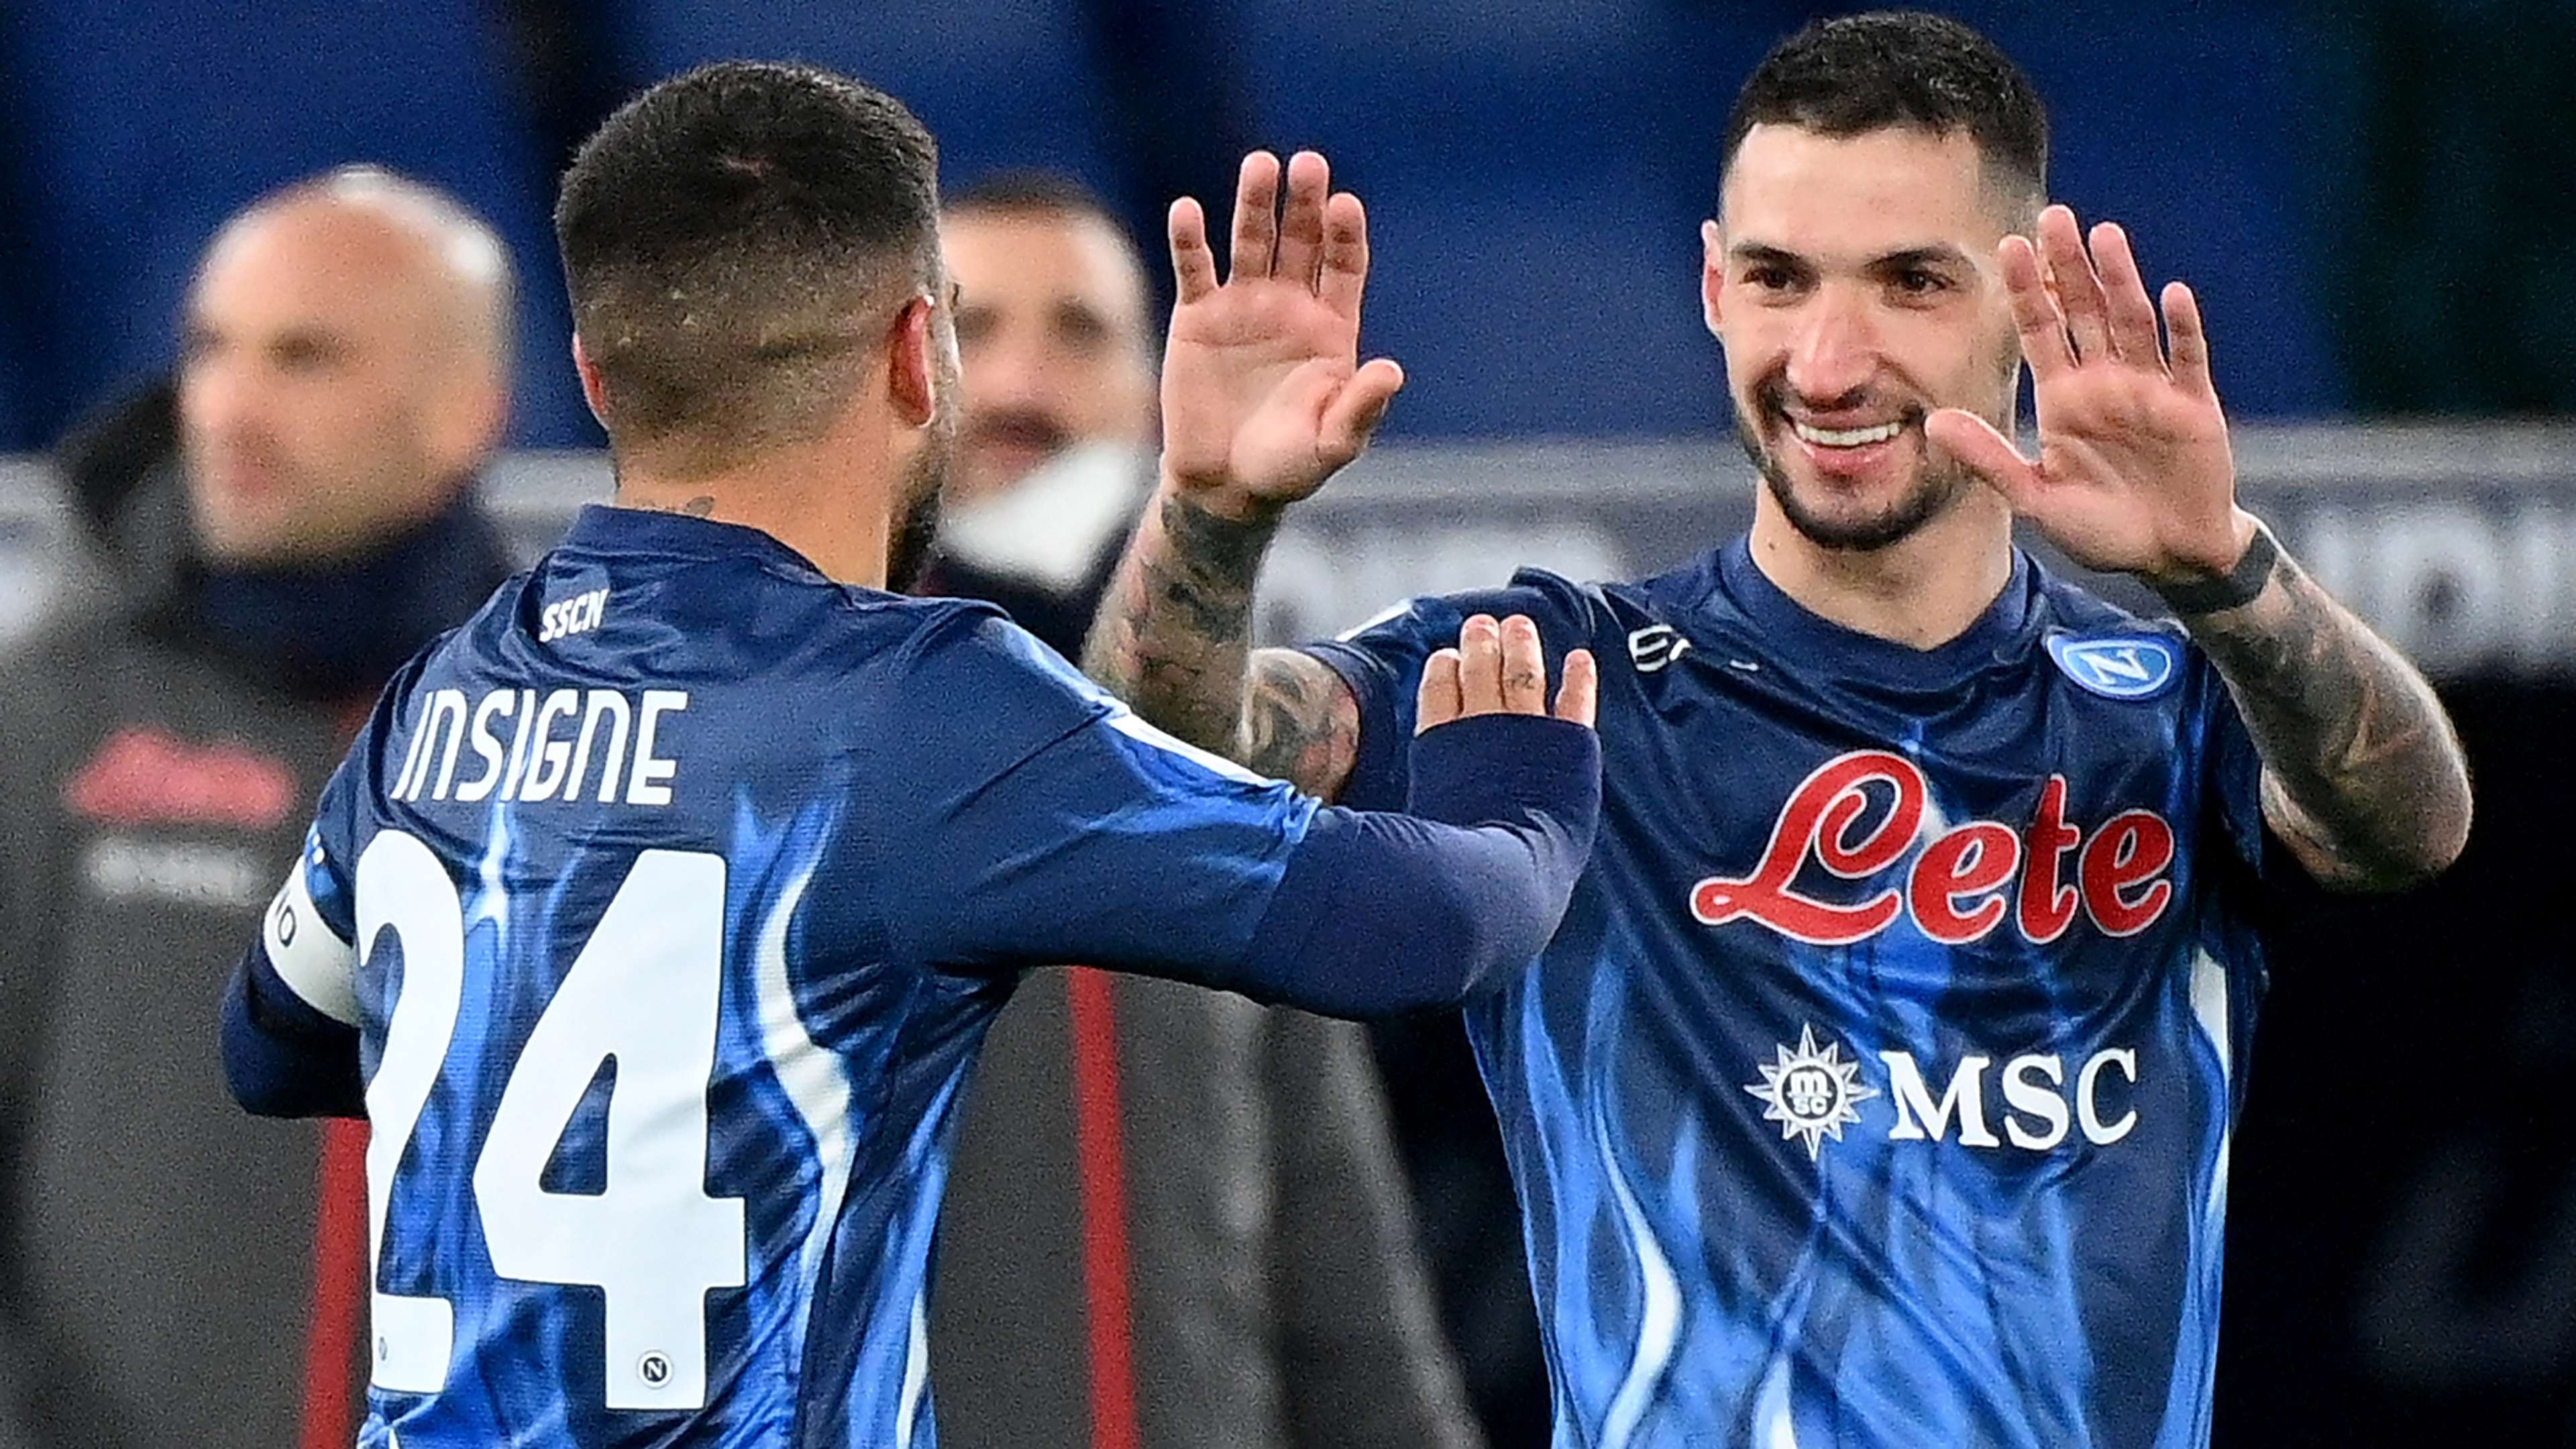 Insigne Politano Lazio Napoli celebrating Serie A